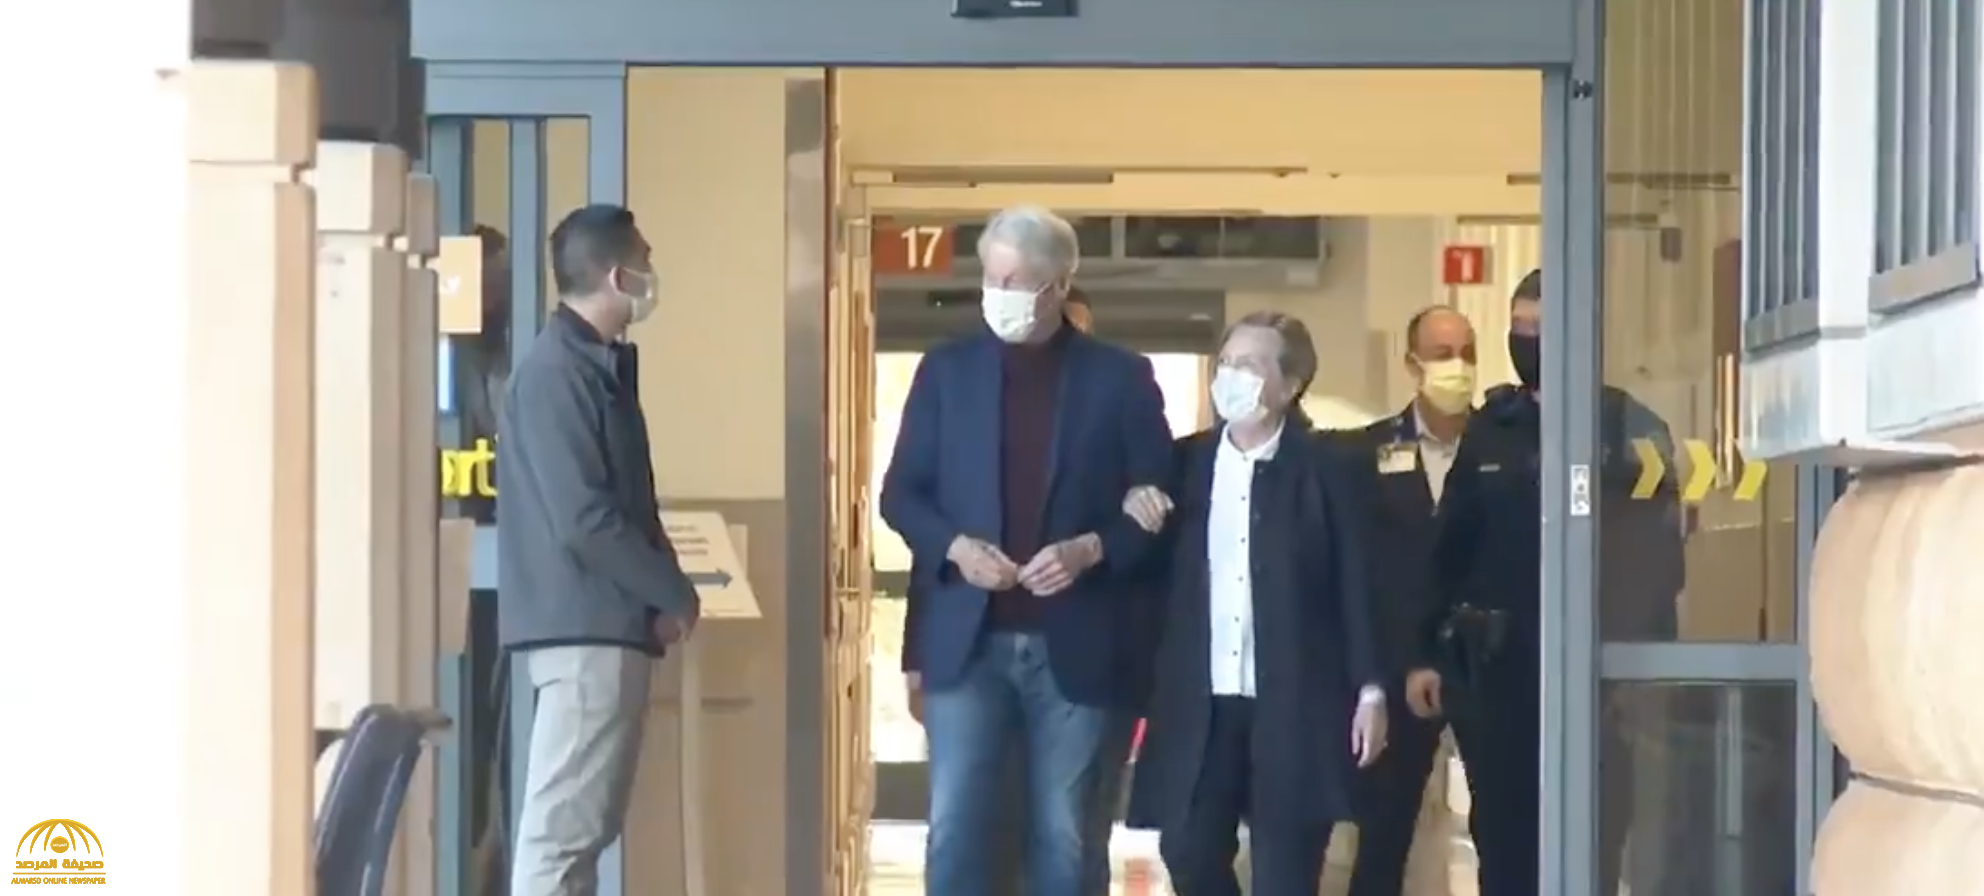 شاهد: أول ظهور لـ"بيل كلينتون" وهو يغادر المستشفى برفقة زوجته هيلاري كلينتون